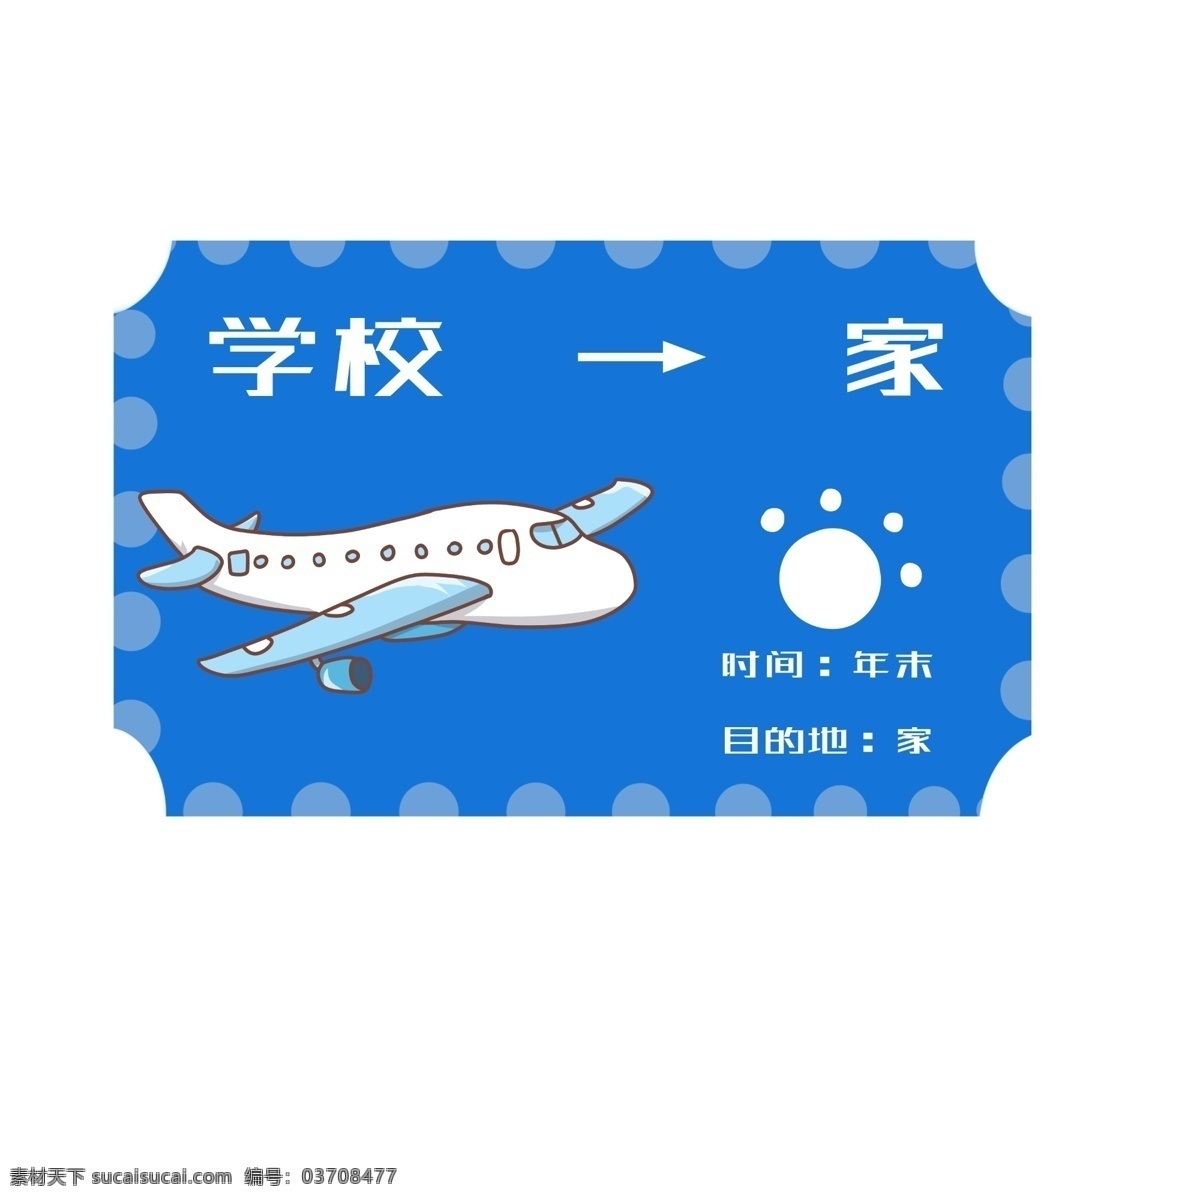 手绘 蓝色 飞机票 插画 坐飞机回家 返程票 坐 飞机 回家 过年 蓝色学生票 寒假坐飞机 白色 卡通 装饰